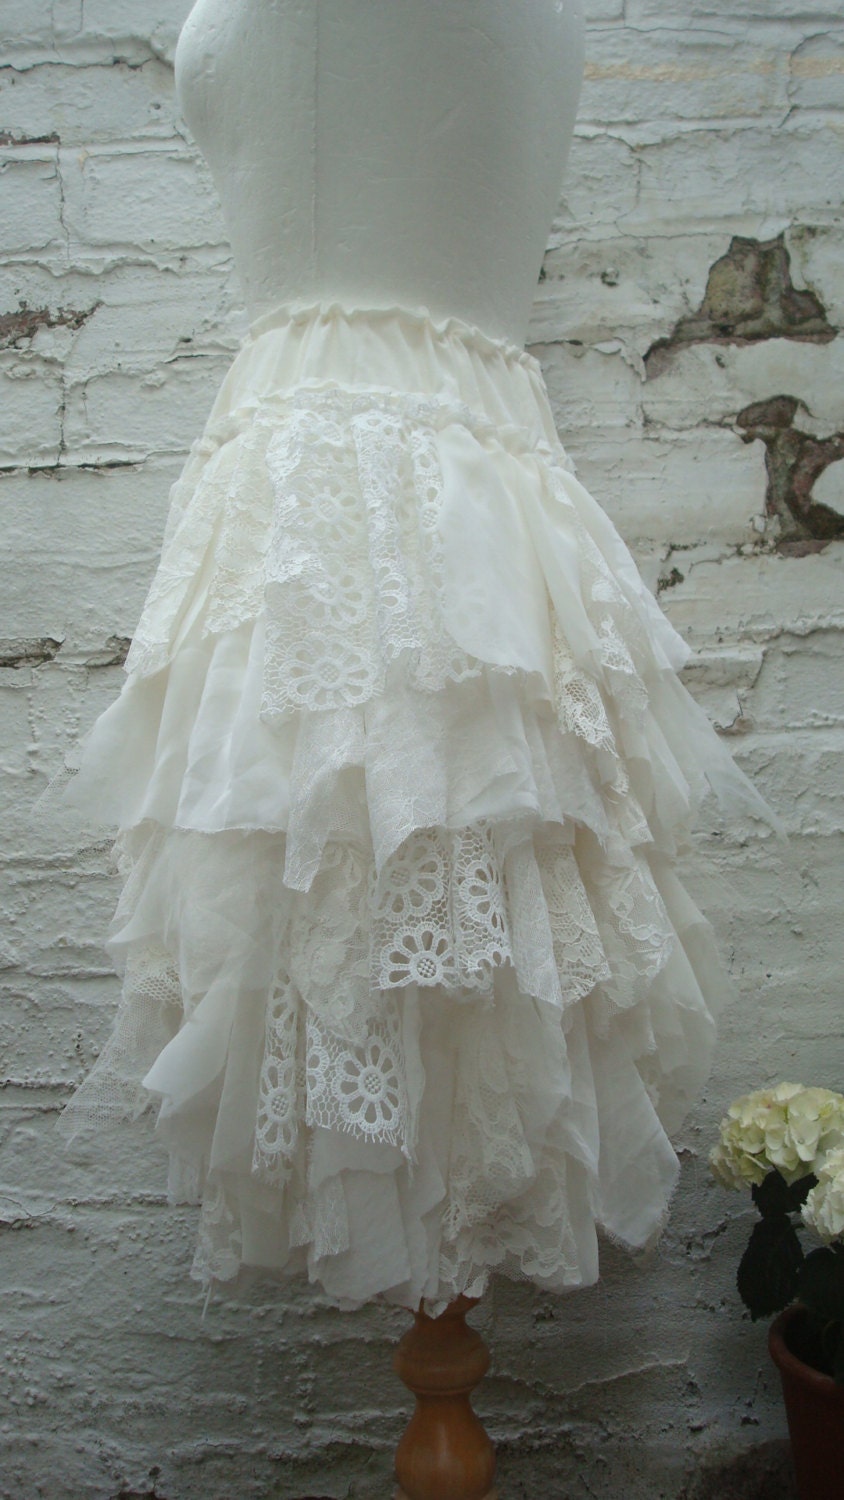 Tattered Wedding Skirt Bridal Skirt Shredded Short Skirt - Etsy